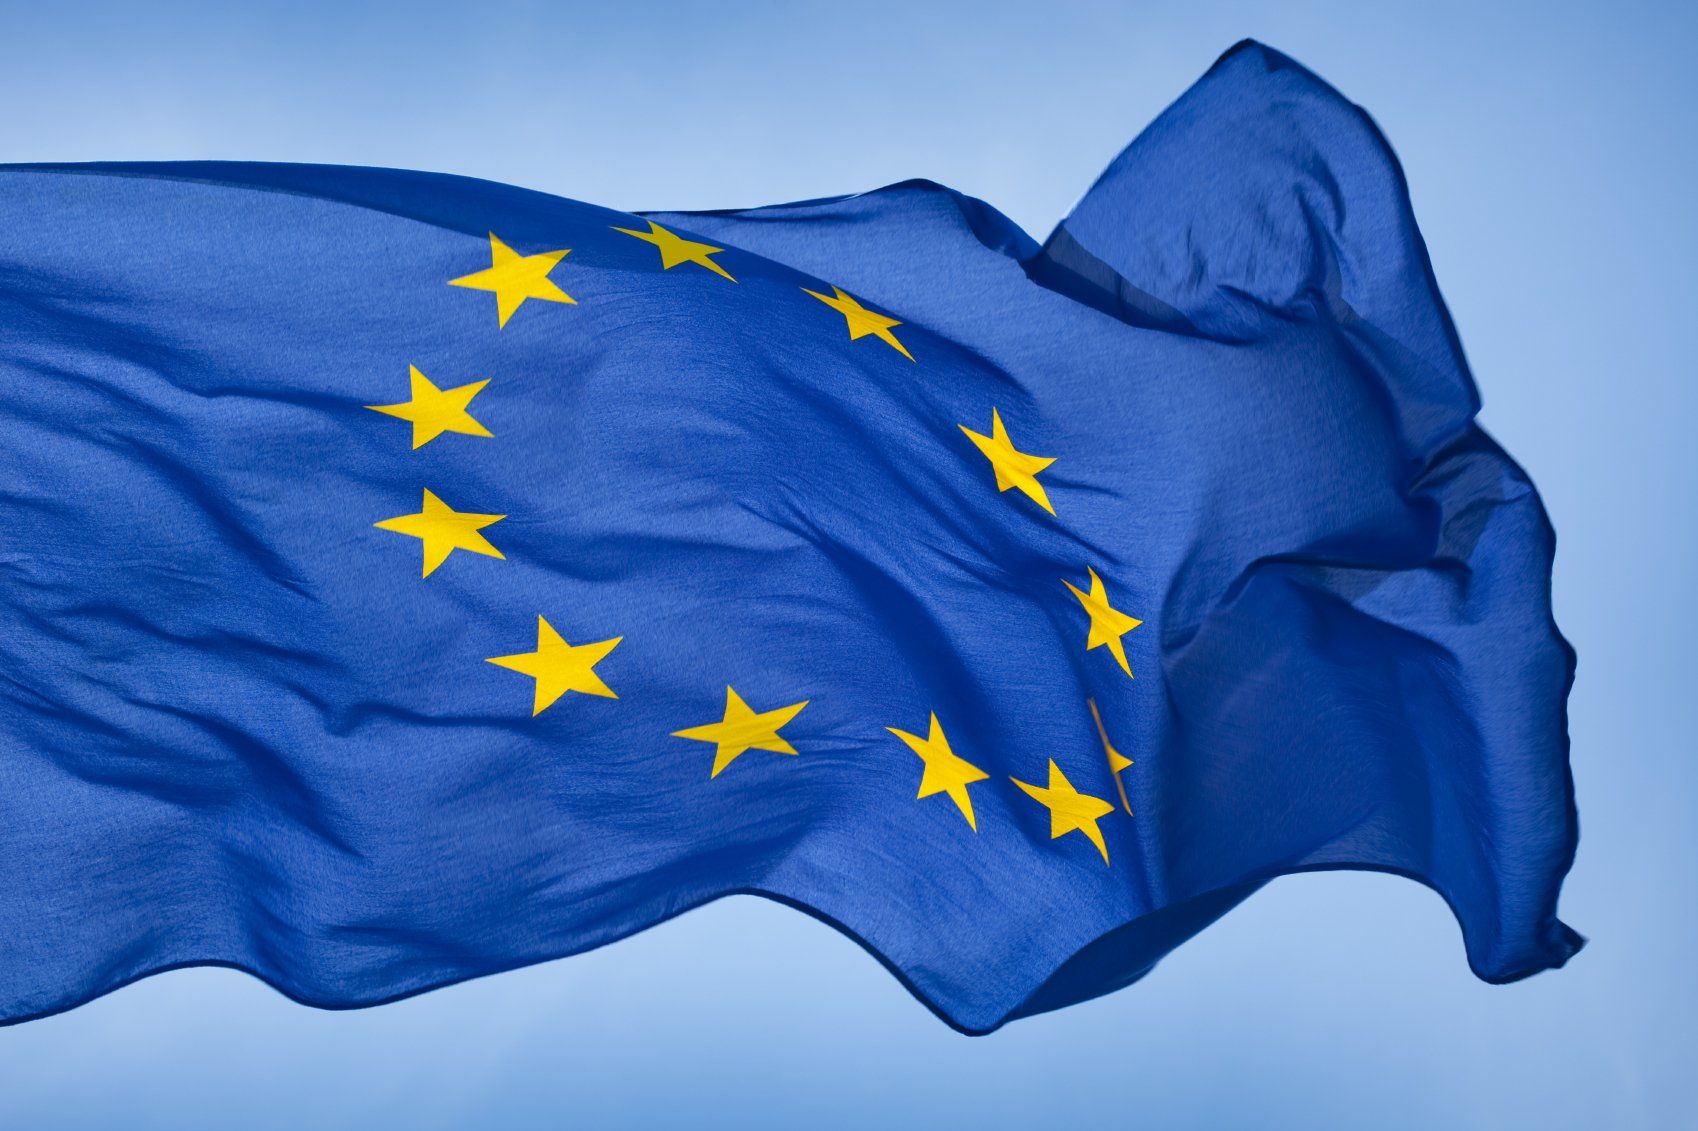 Die Flagge der Europäischen Union, ein Kreis aus zwölf goldenen Sternen auf blauem Hintergrund, weht im Wind des italienischen Handelsrecht